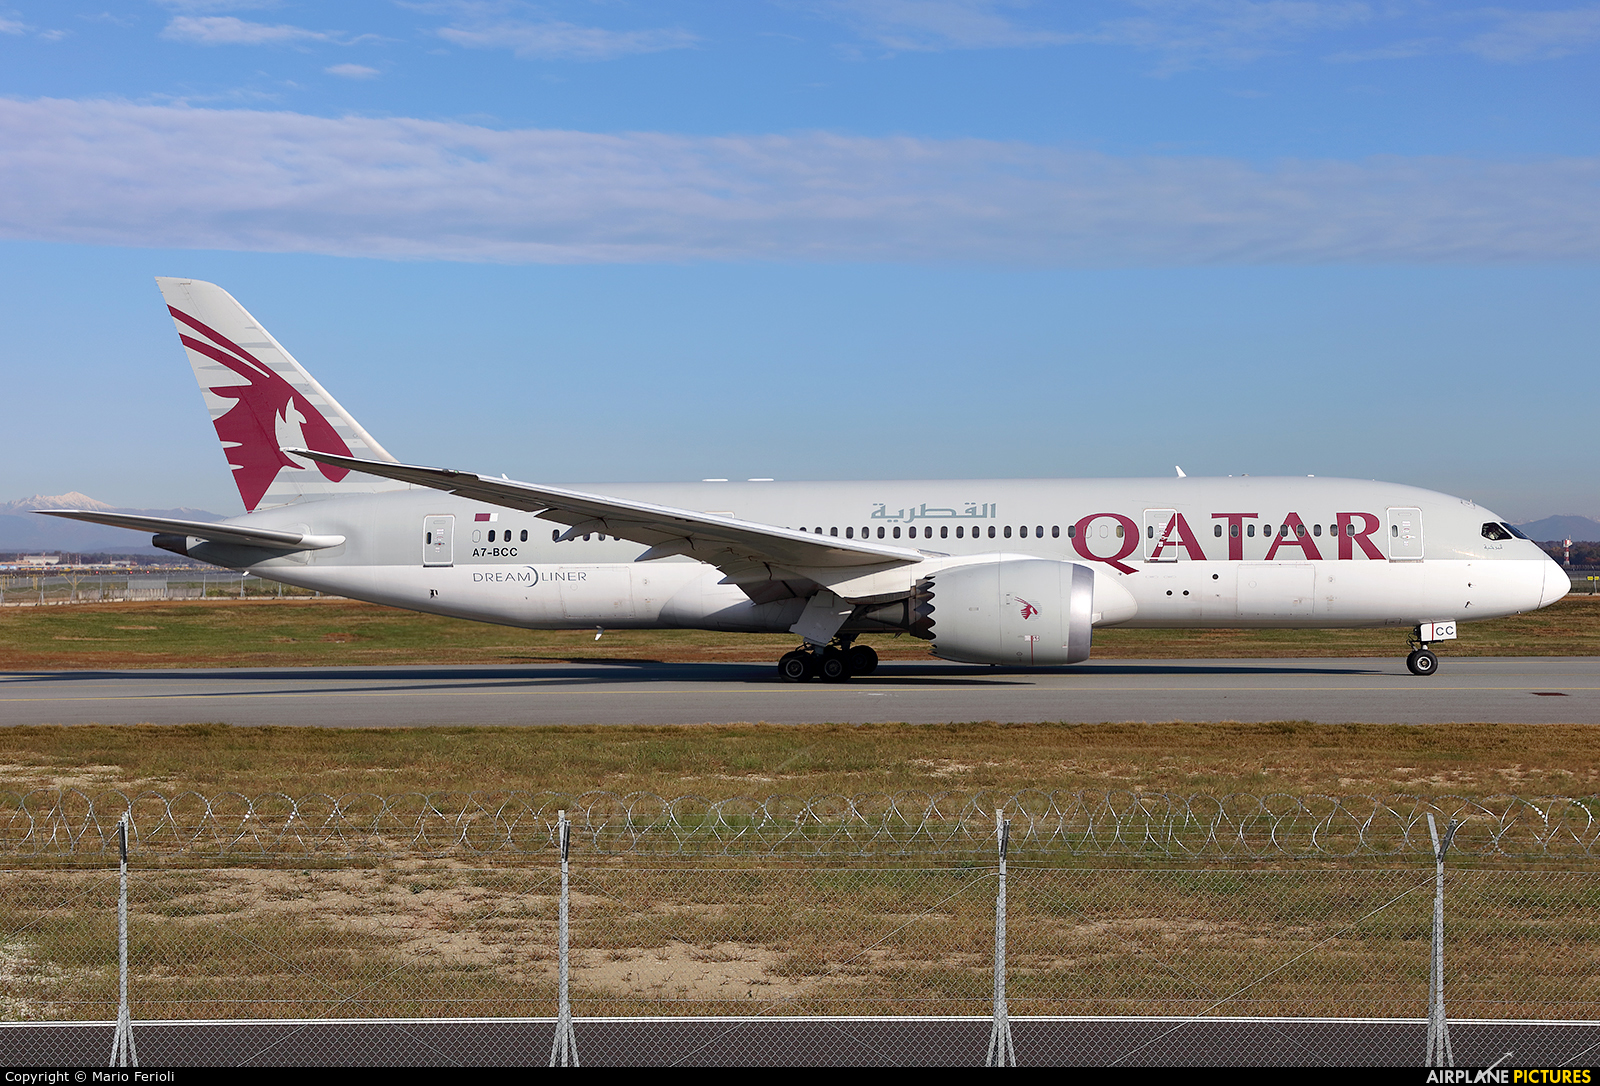 Qatar Airways A7-BCC aircraft at Milan - Malpensa